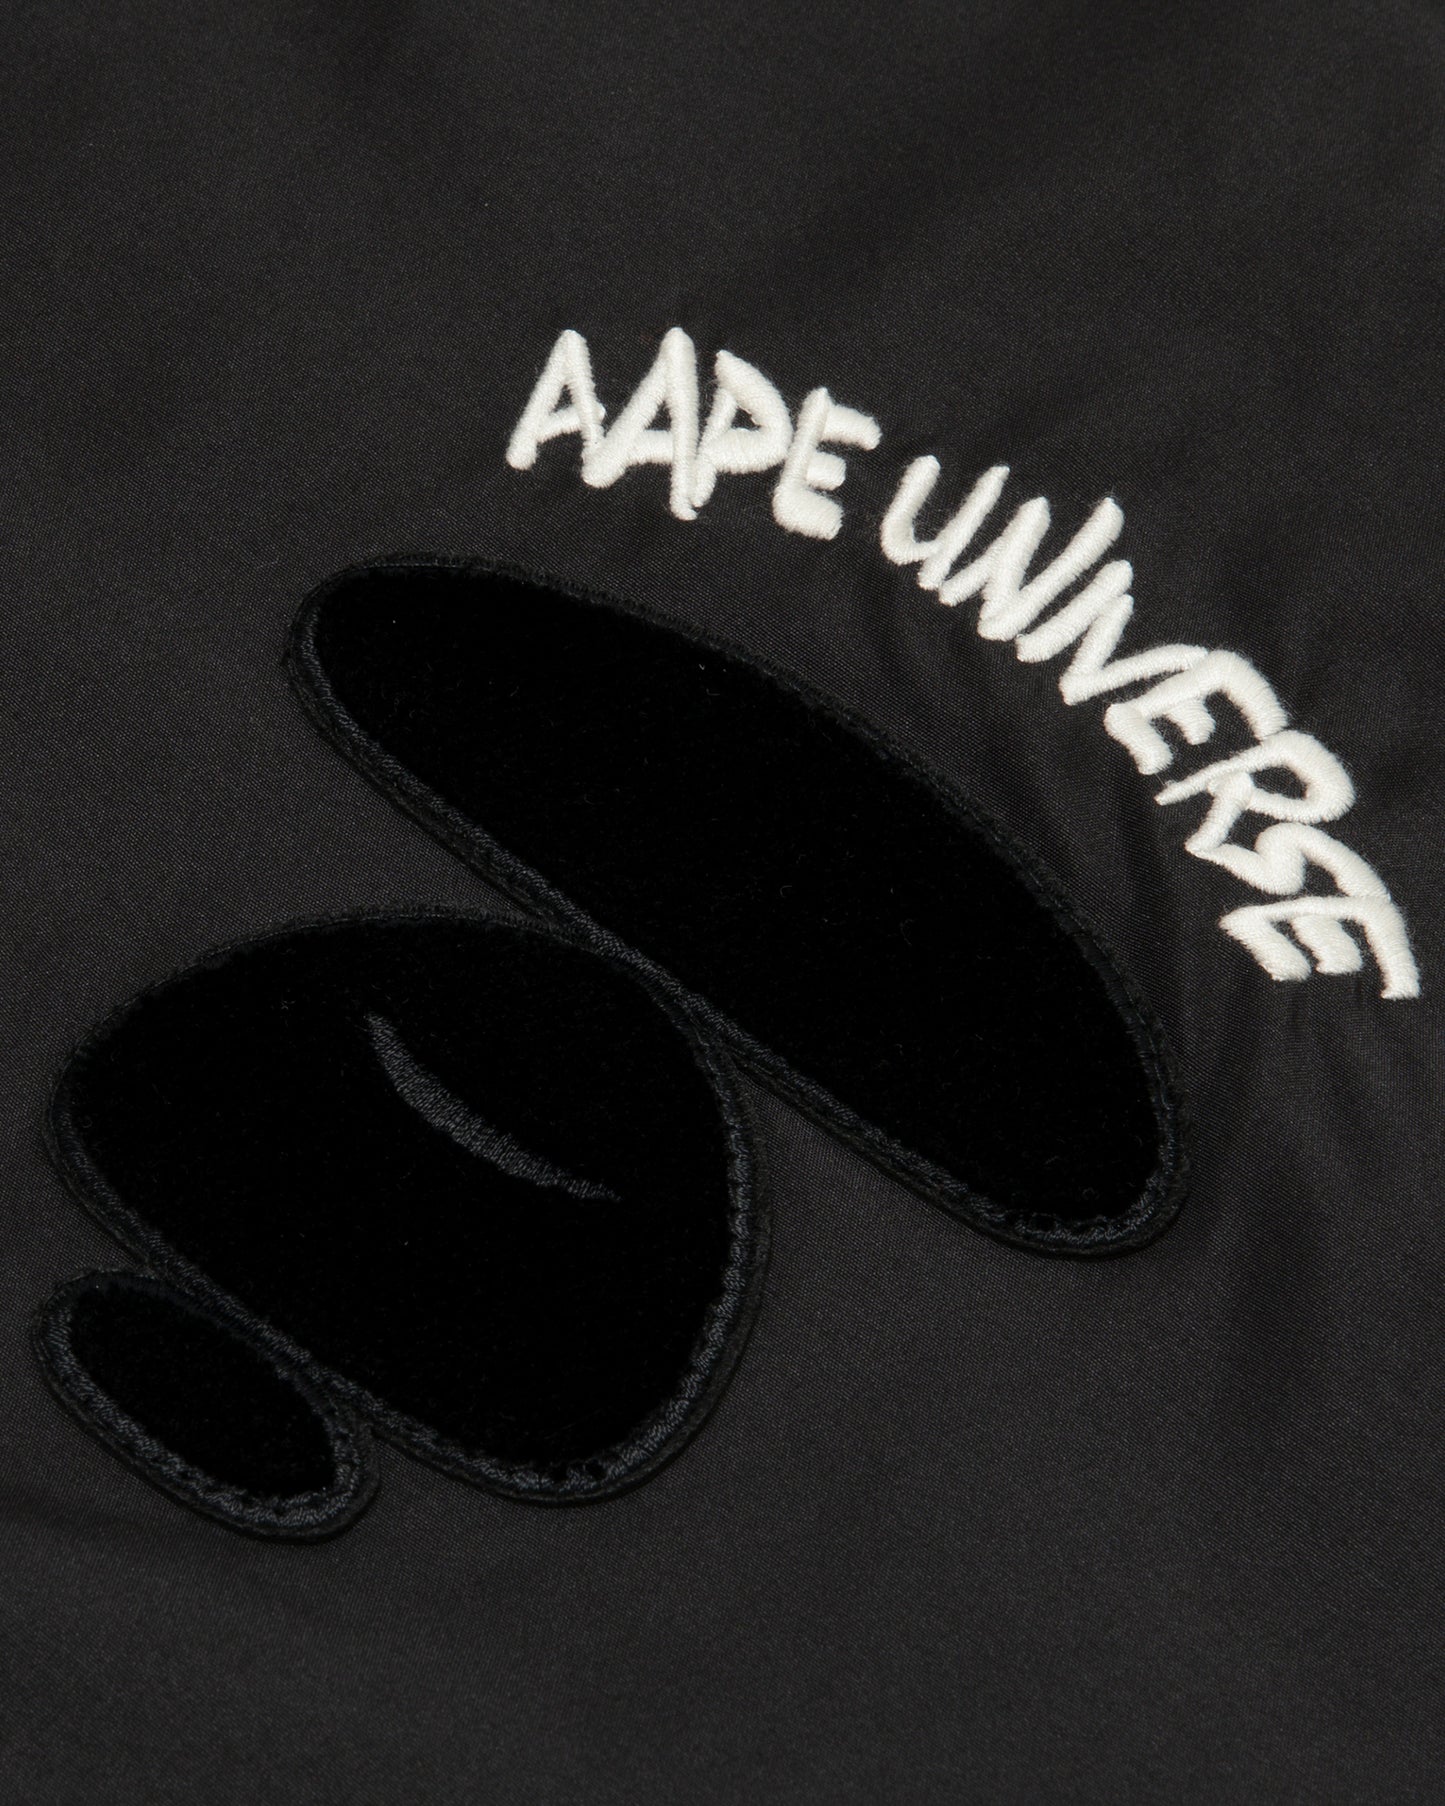 Men Embroidered Bomber Jacket in Black